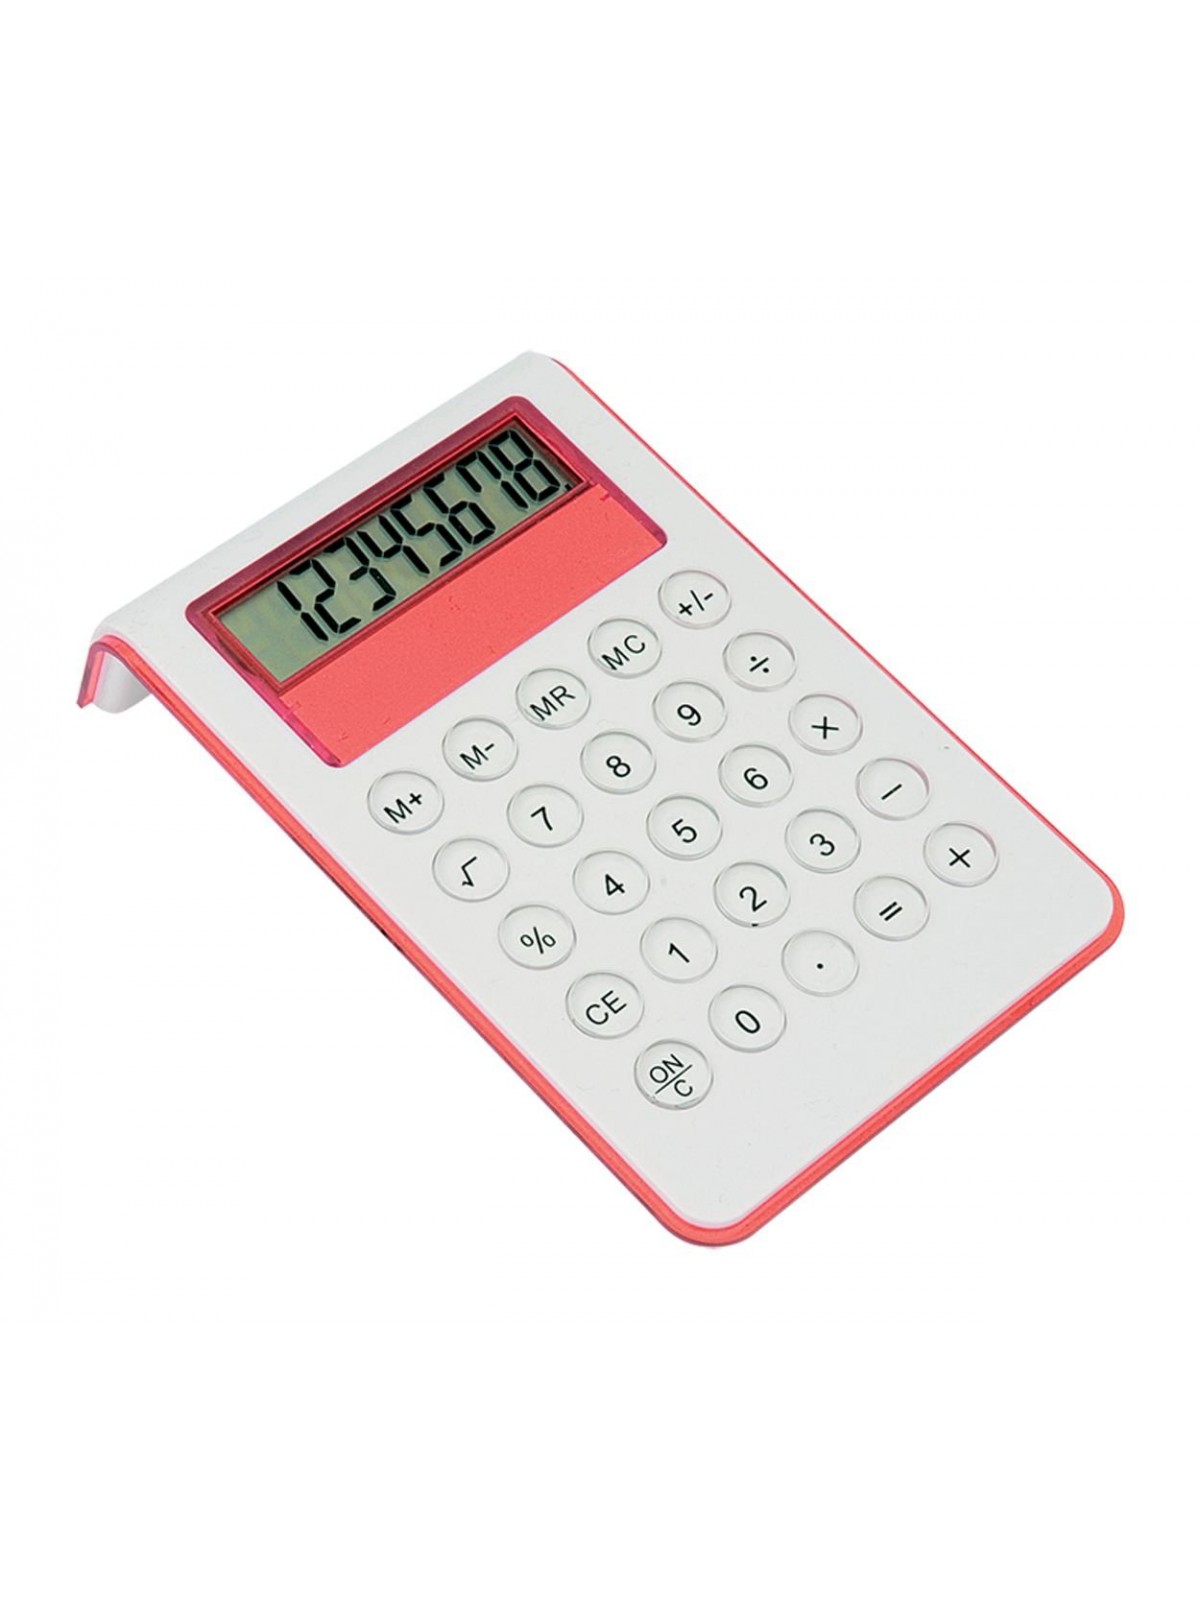 10-402 Calculatrice MYD calculator personnalisé